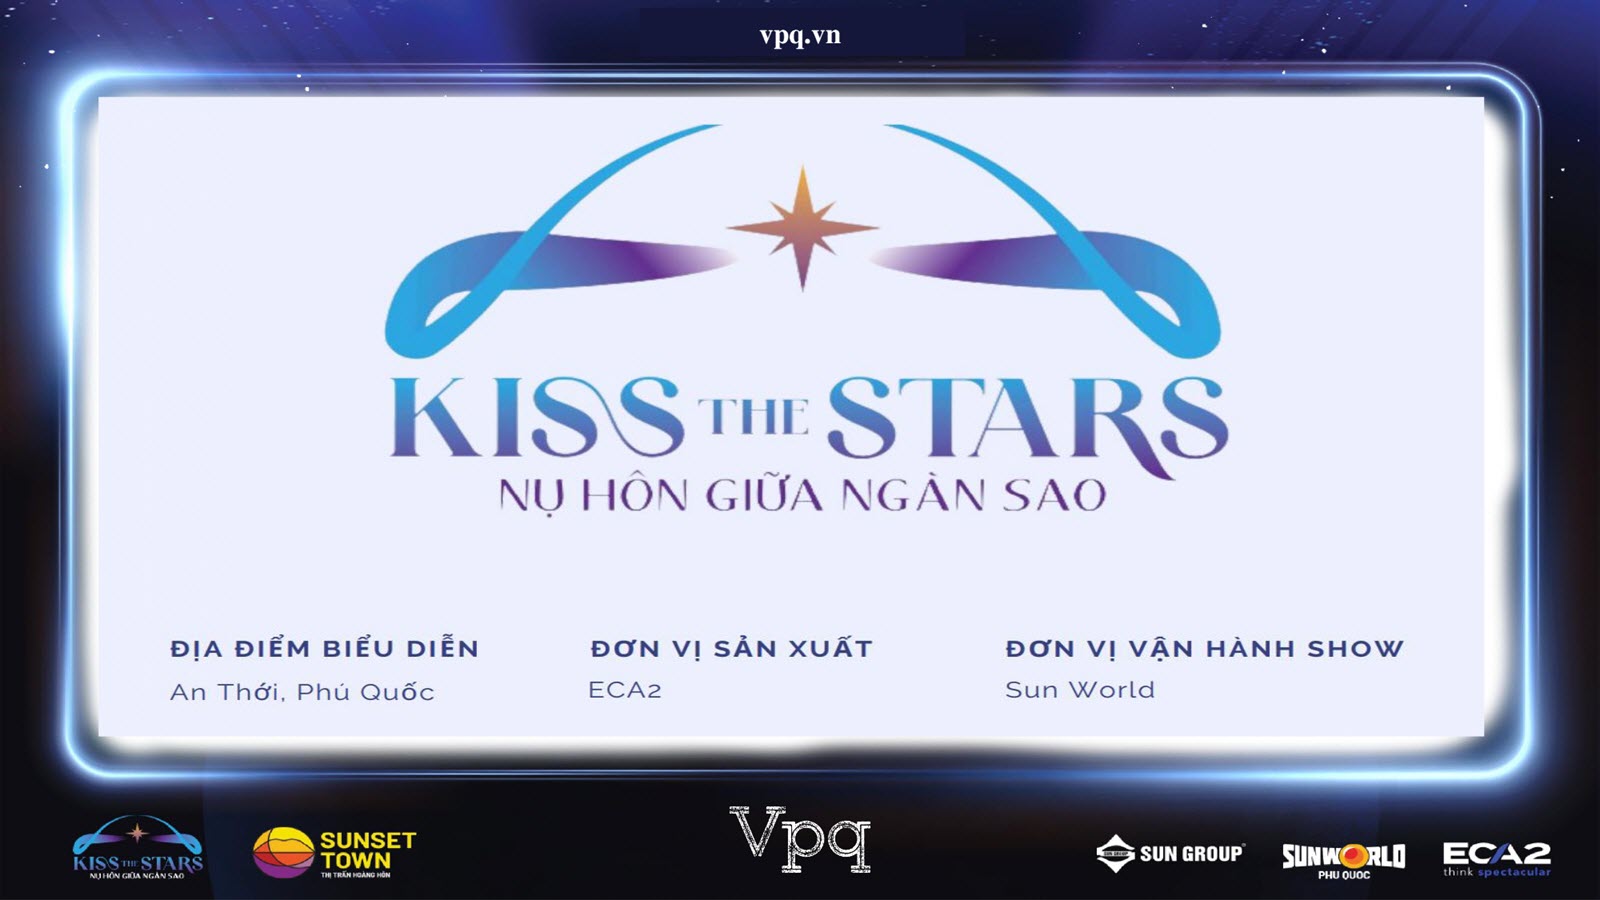 Kiss The Stars - Nụ hôn giữa Ngàn sao